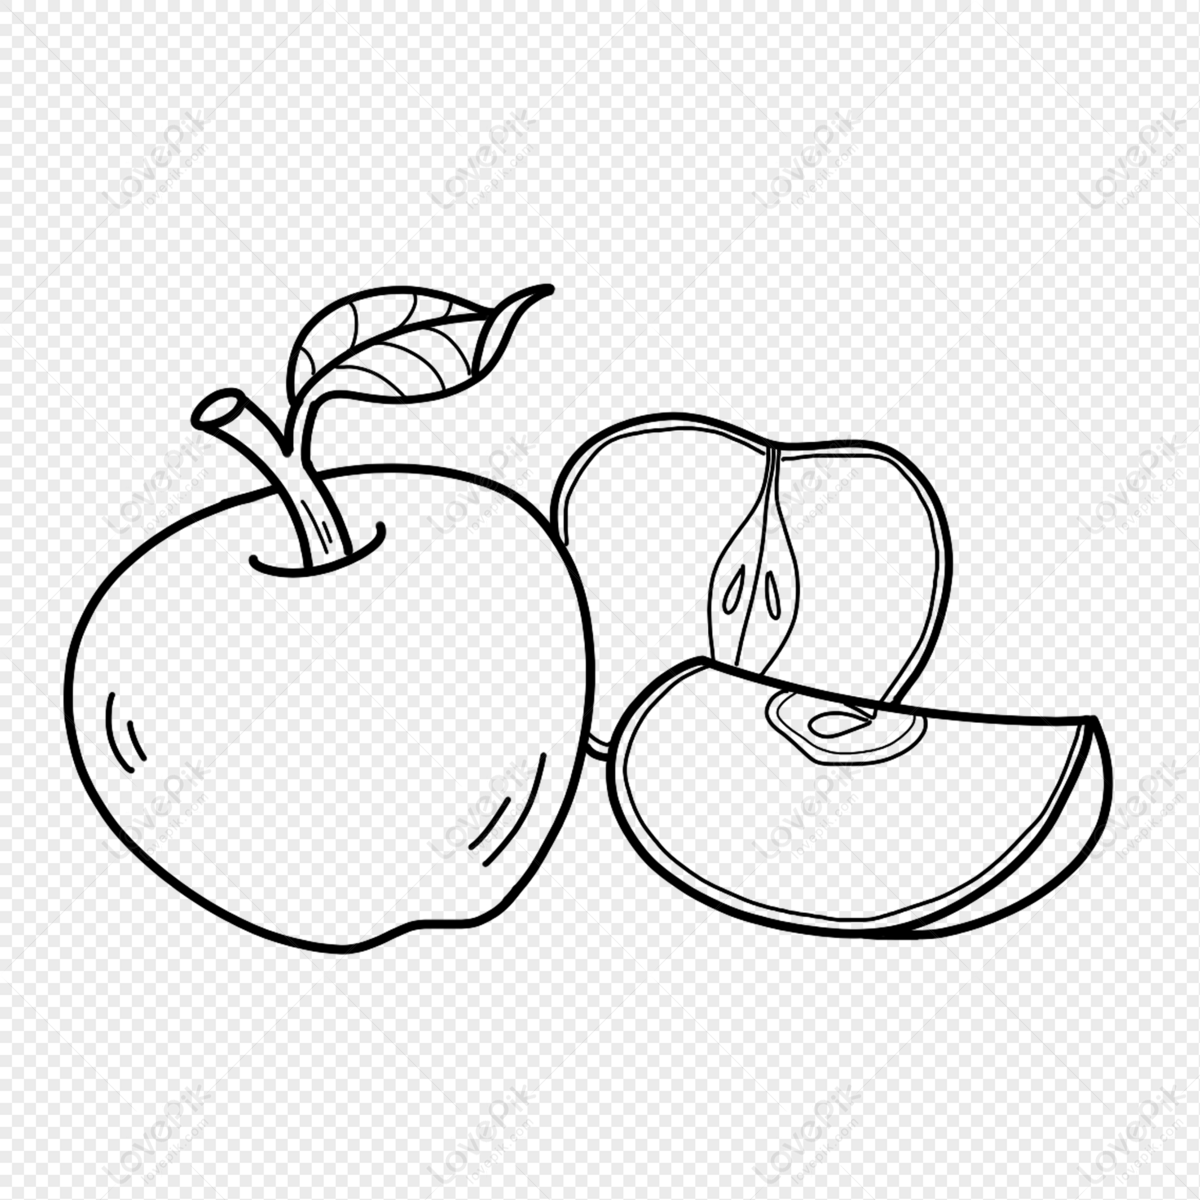 Line drawing cartoon doodle juicy bitten apple Vector Image